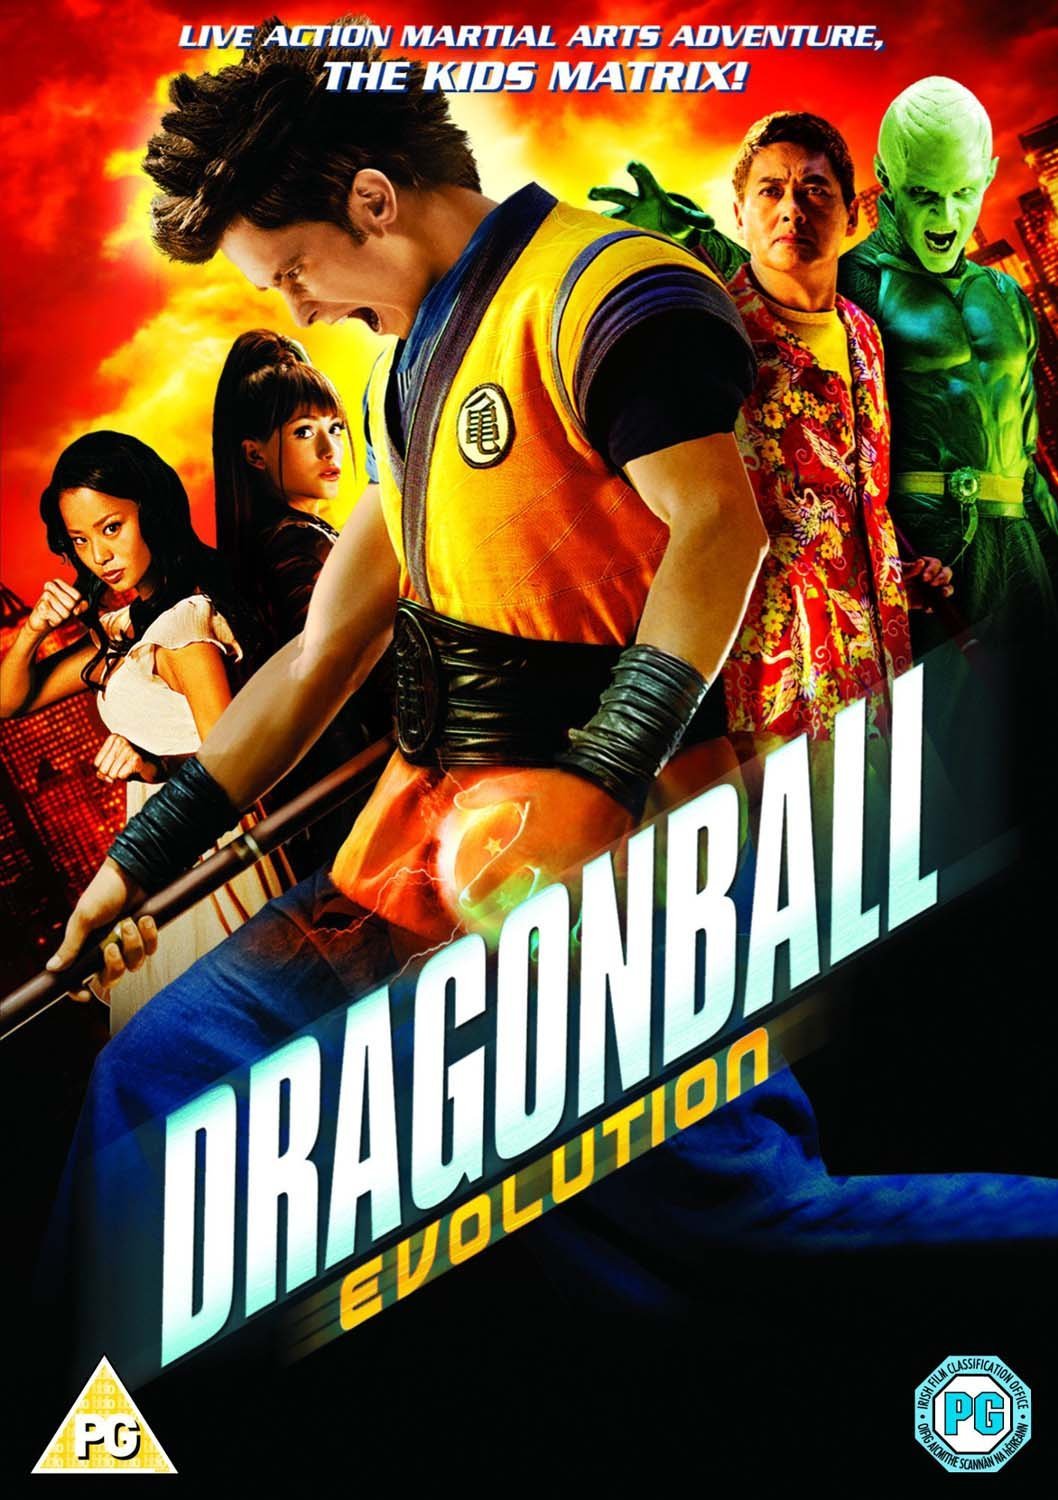 Dragonball Evolution: as razões do fracasso do live-action de